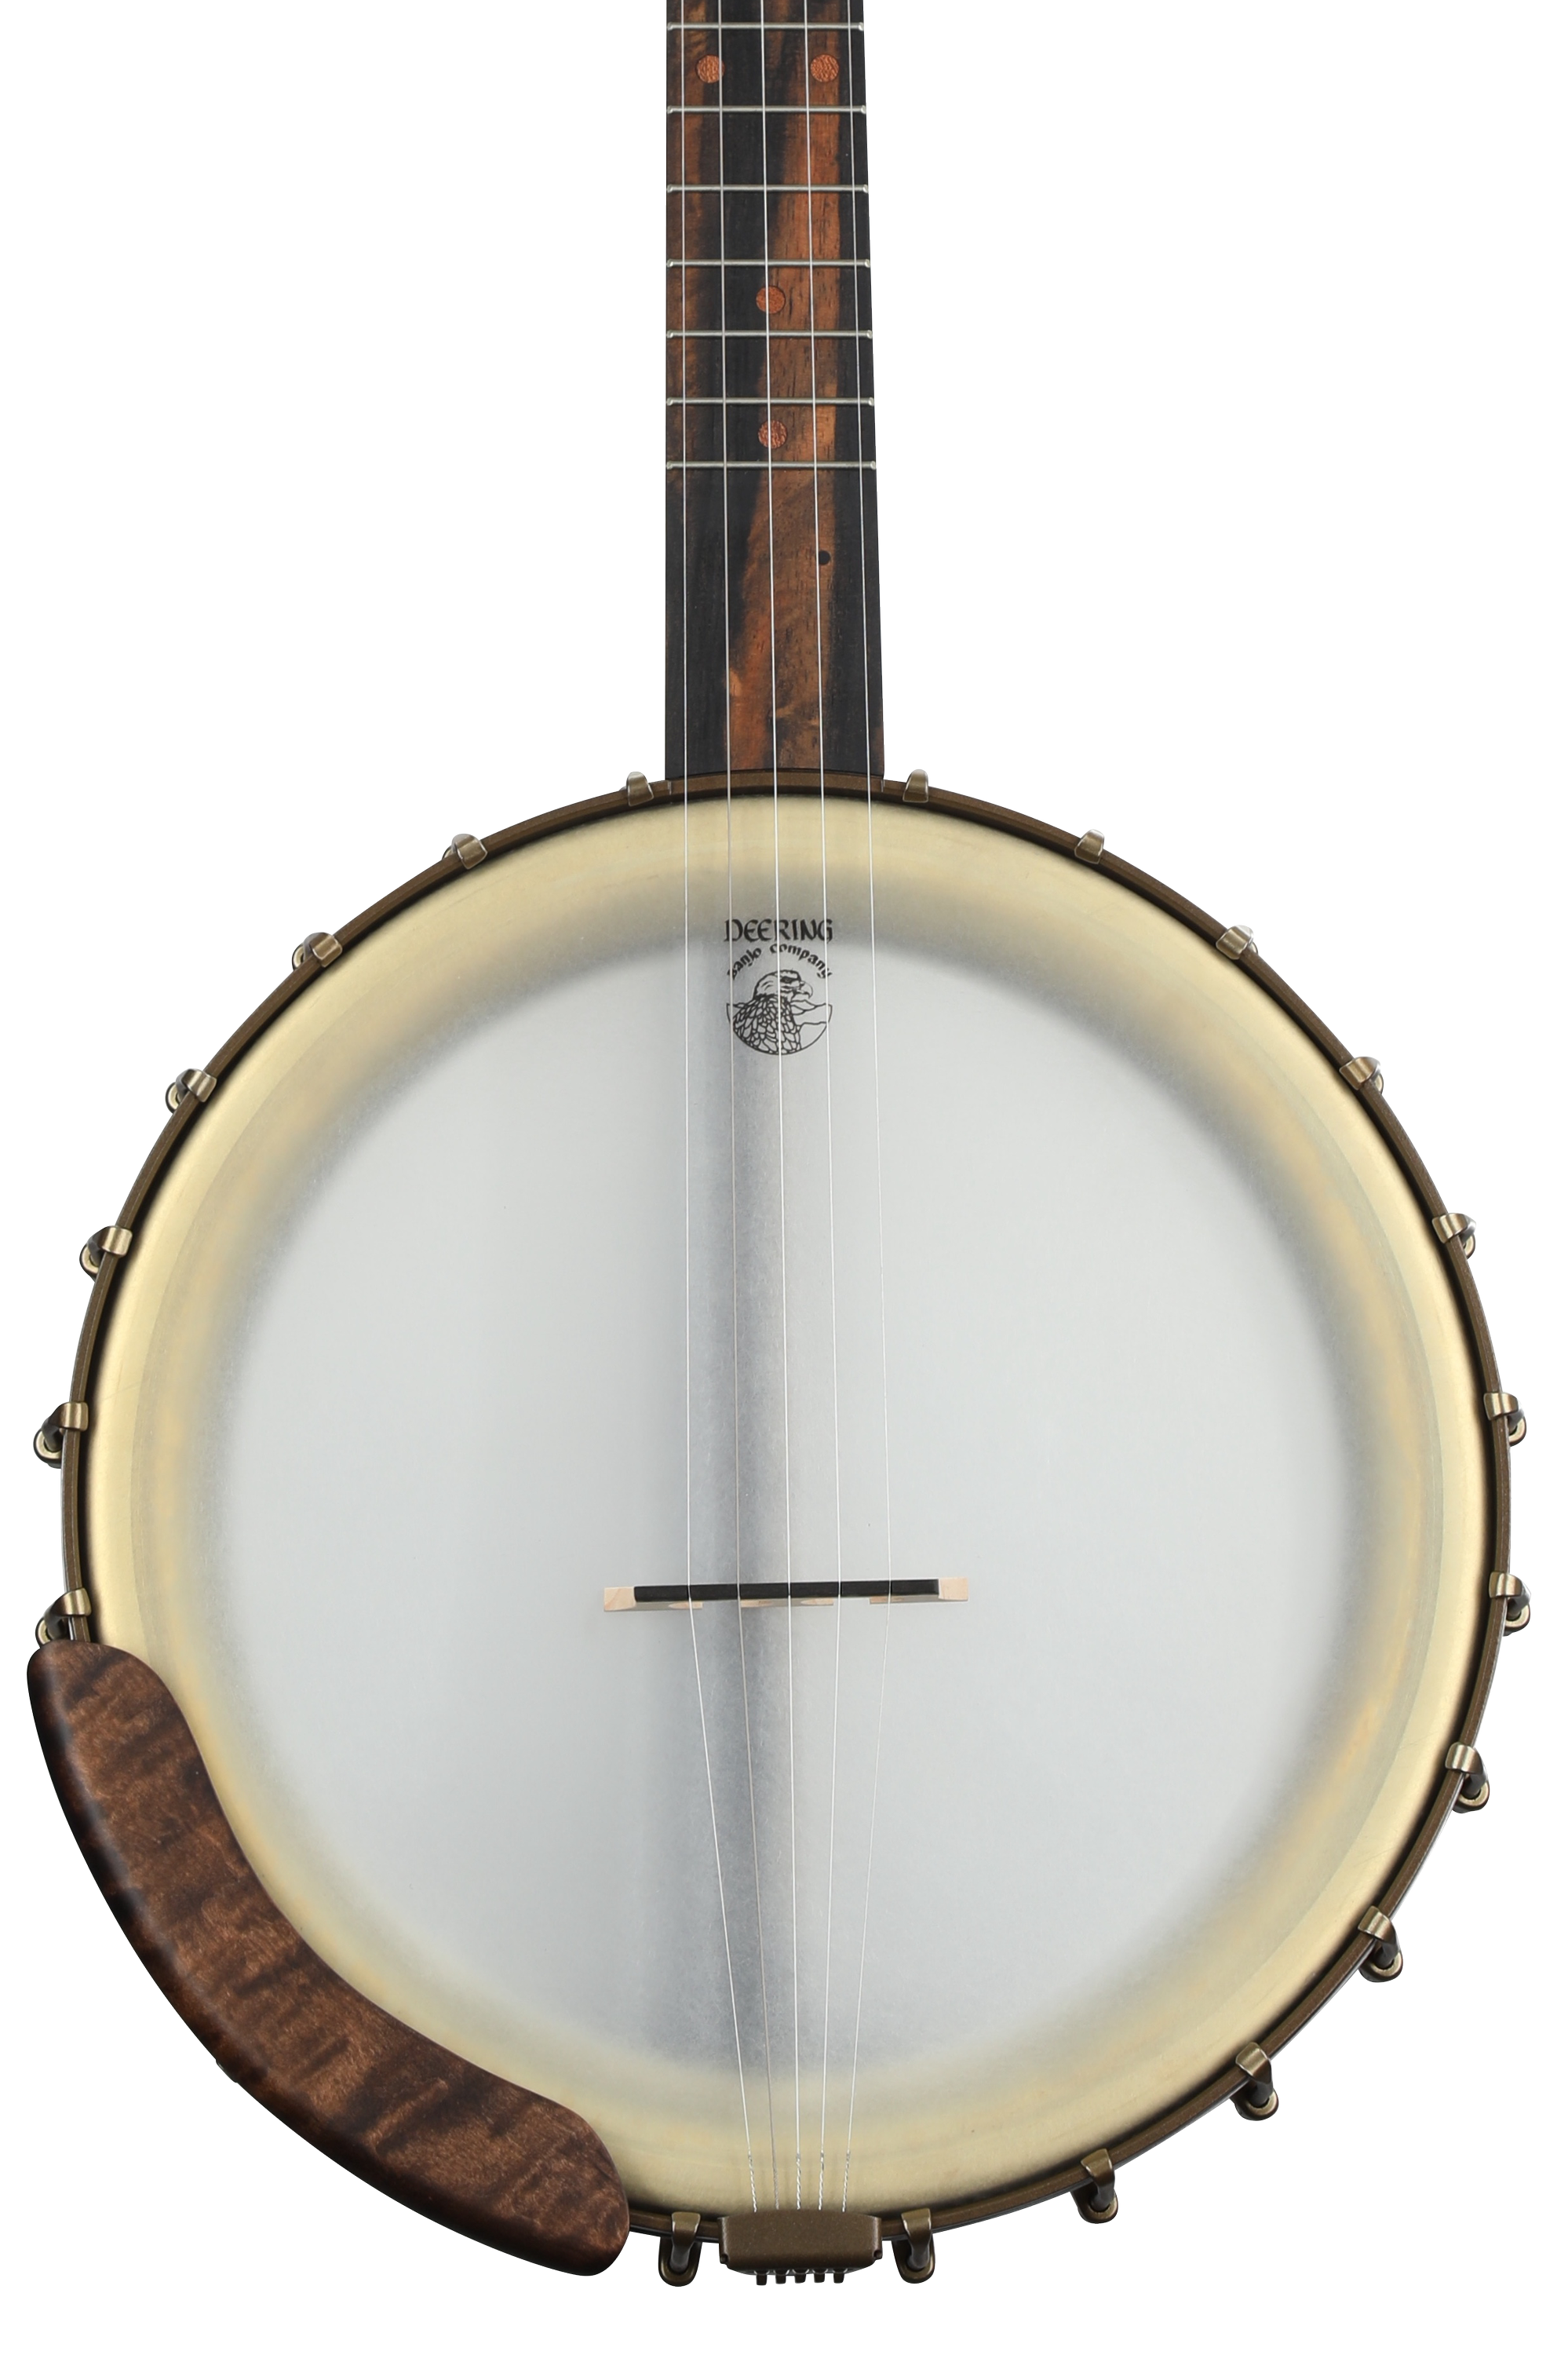 Deering Vega Vintage Star 5-string Open-back Banjo